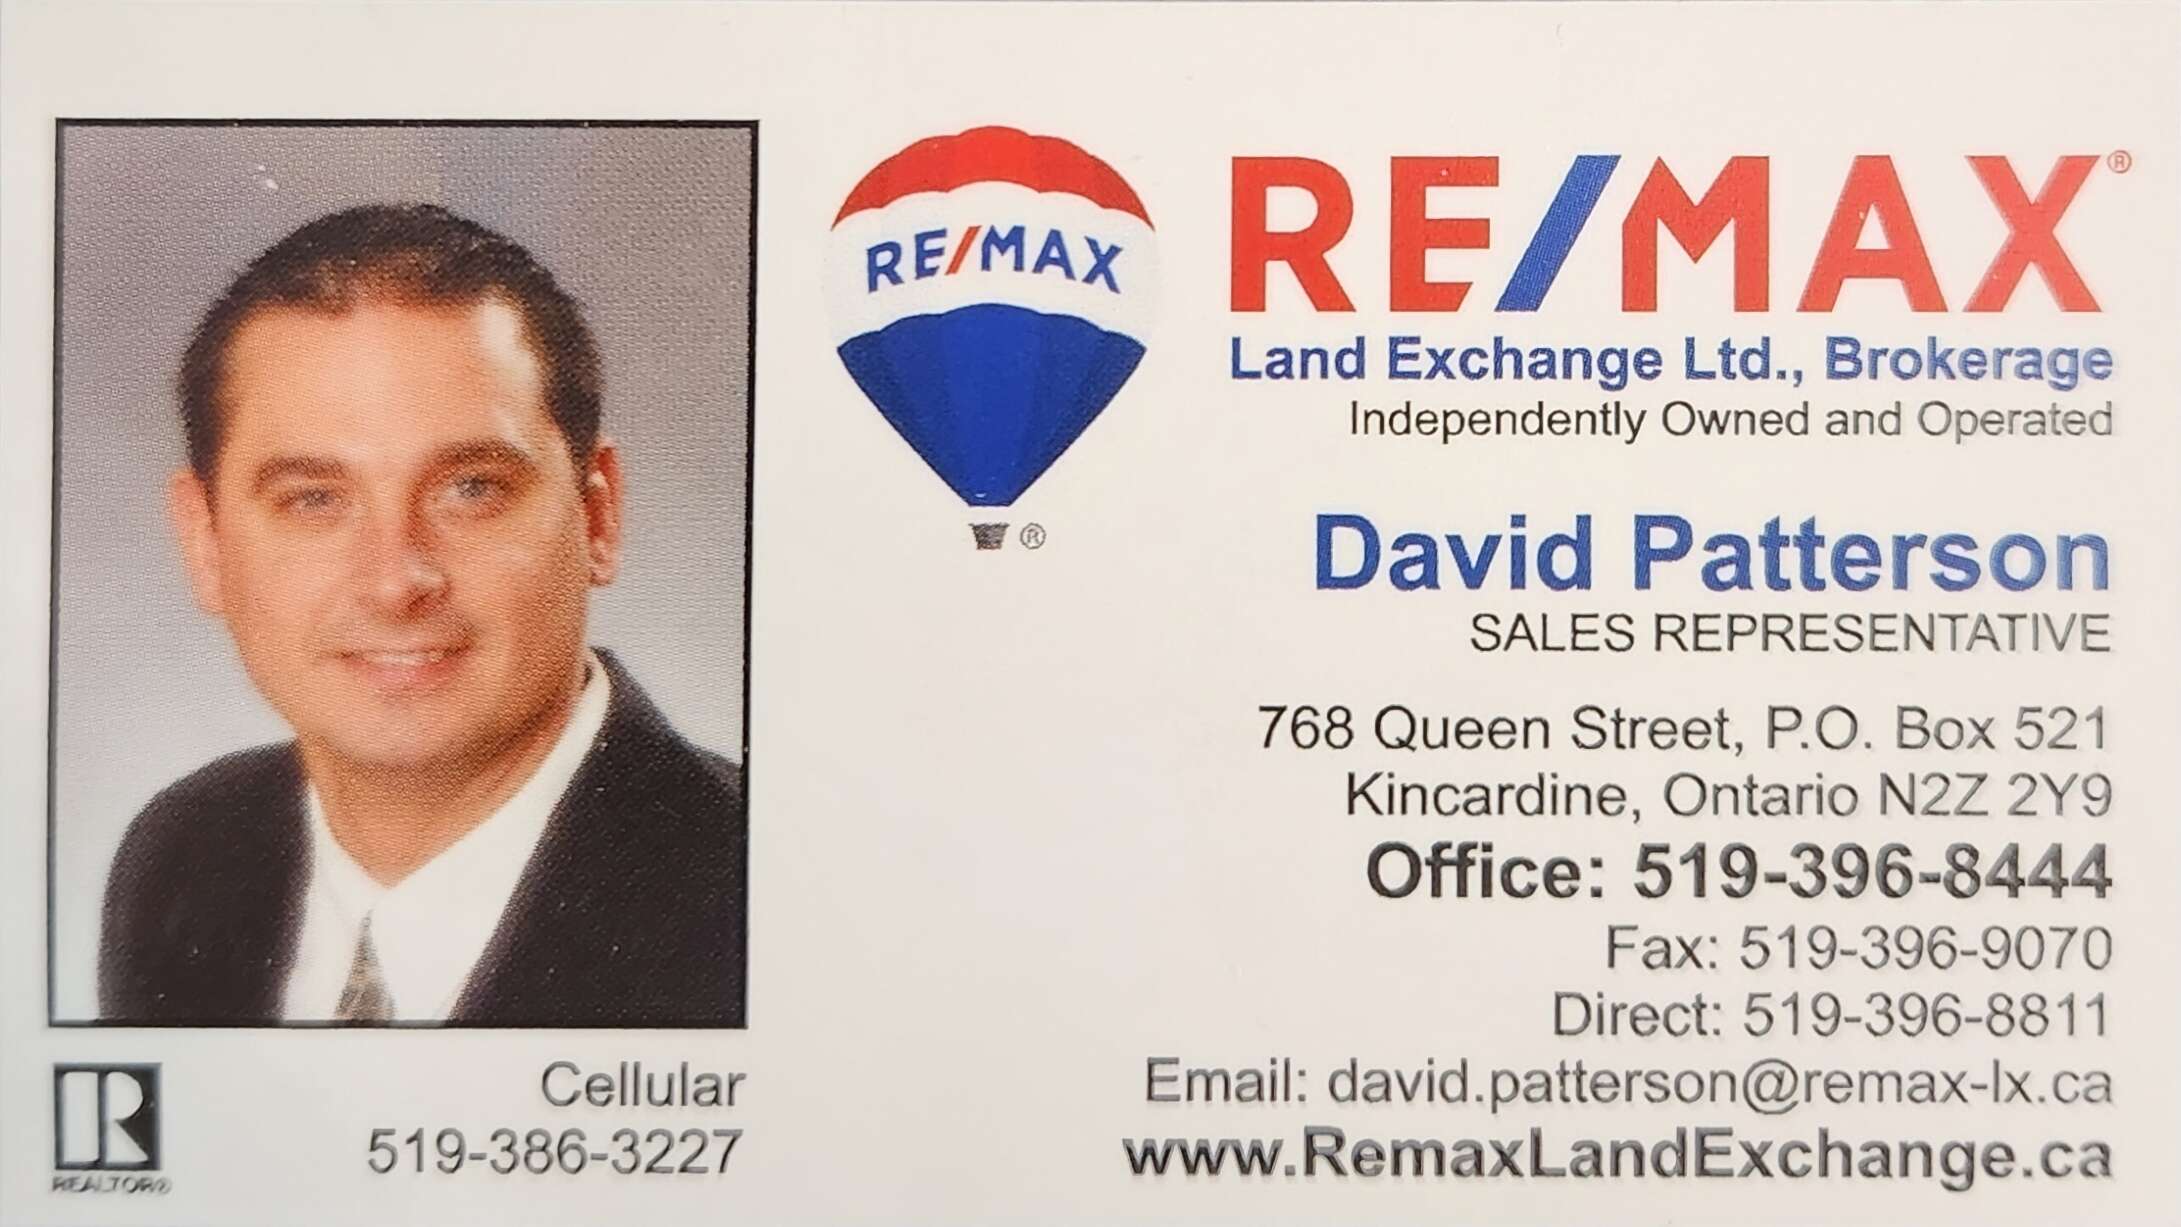 David Patterson - Remax Land Exchange Ltd.